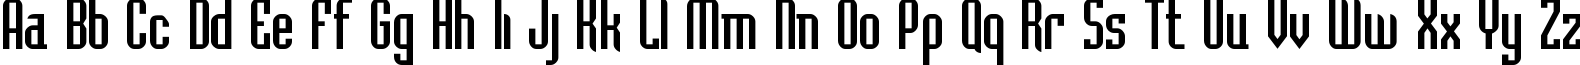 Пример написания английского алфавита шрифтом Bedrock-Cyr